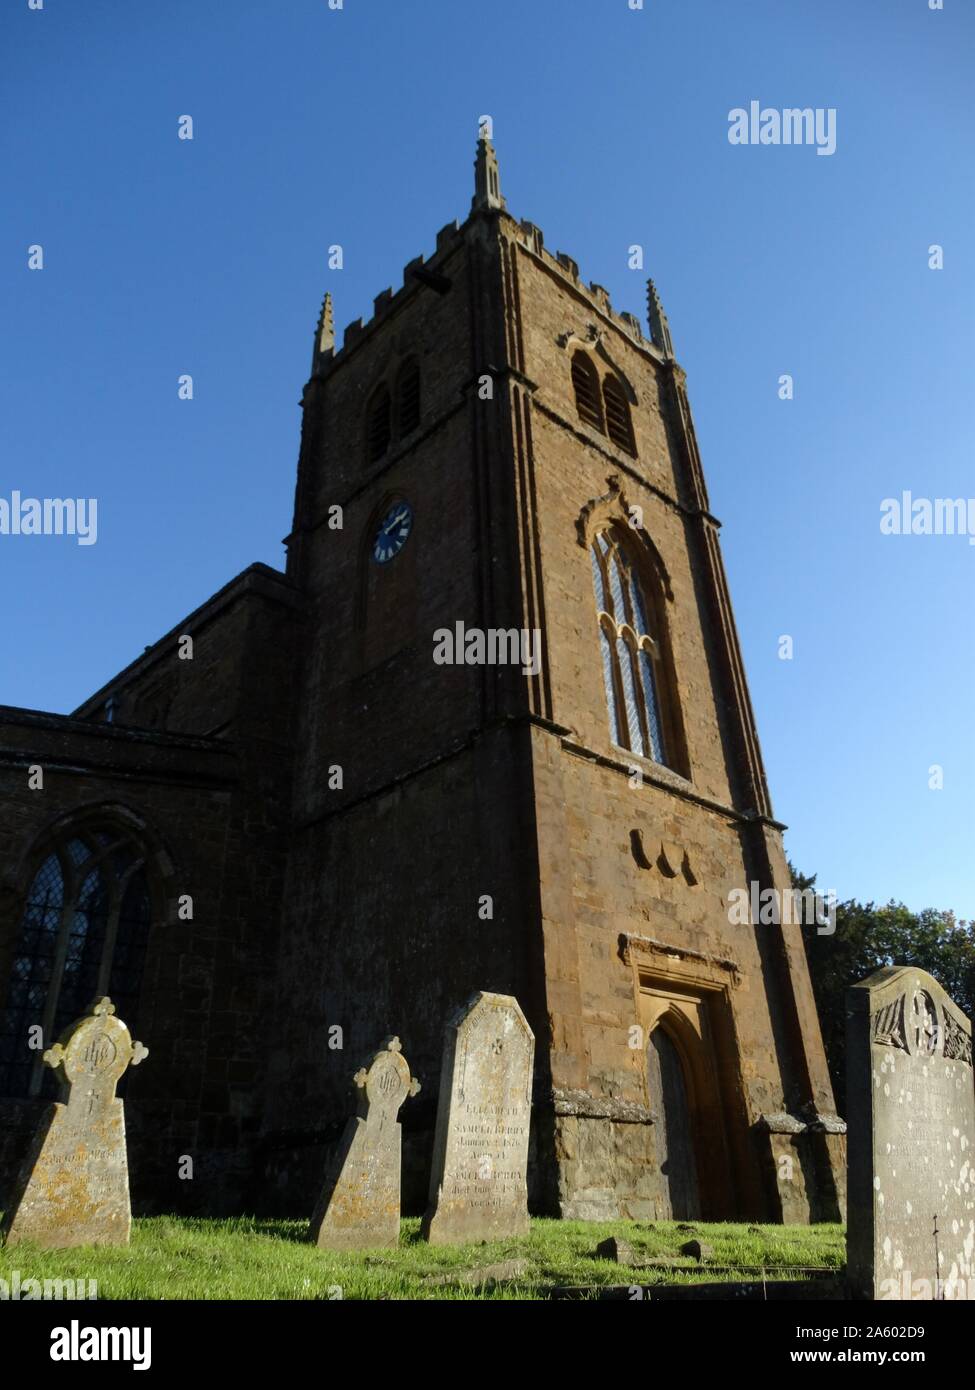 All Saints Church of England, église paroissiale, Wroxton Oxfordshire, Angleterre. L'église date du 14ème siècle avec des ajouts et rénovations y compris les vitraux et la tour ajouté au xviiie et xixe siècle. Banque D'Images